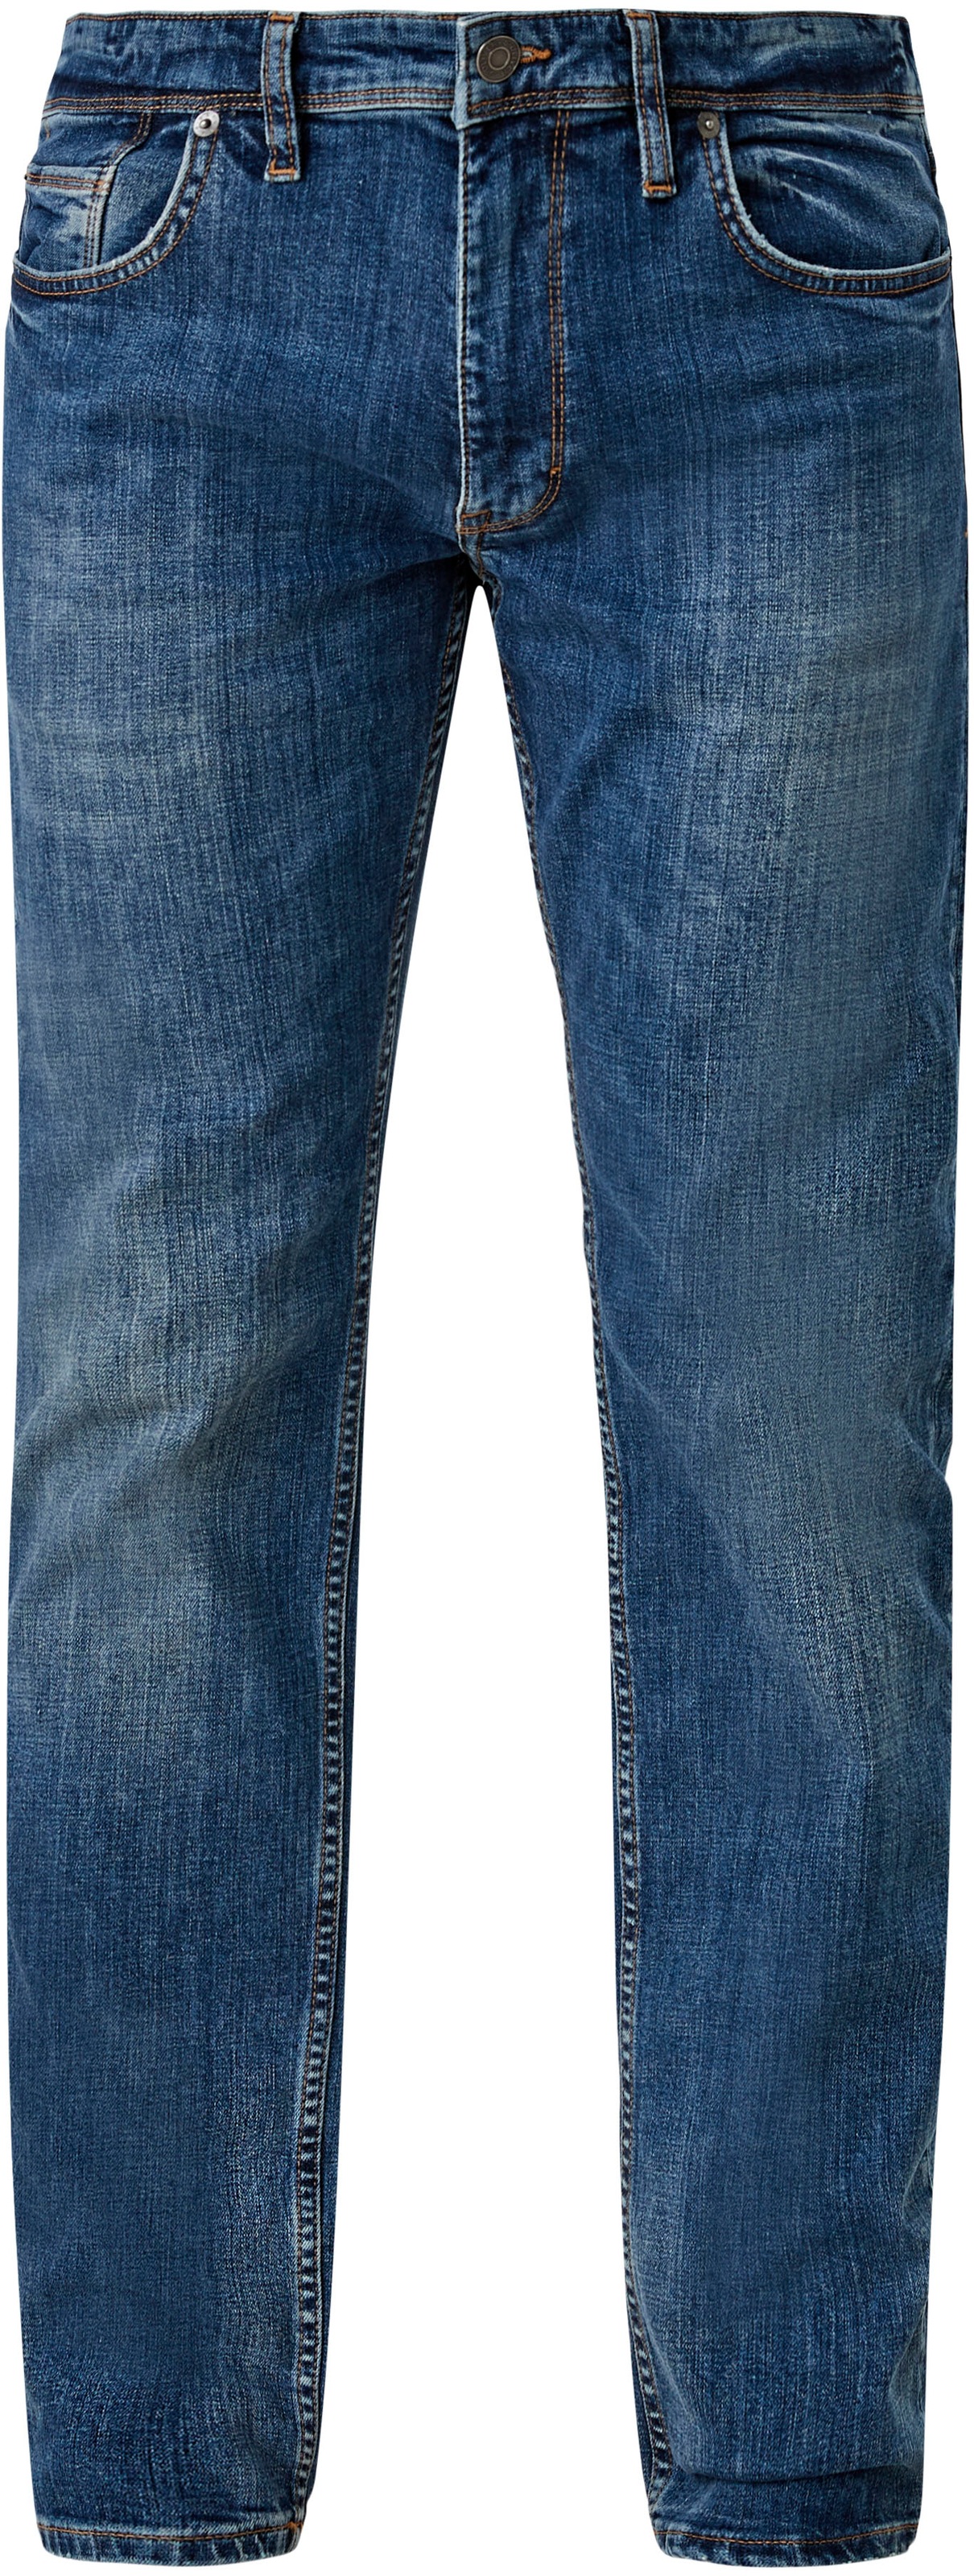 s.Oliver 5-Pocket-Jeans, mit authentischer Waschung ♕ bei